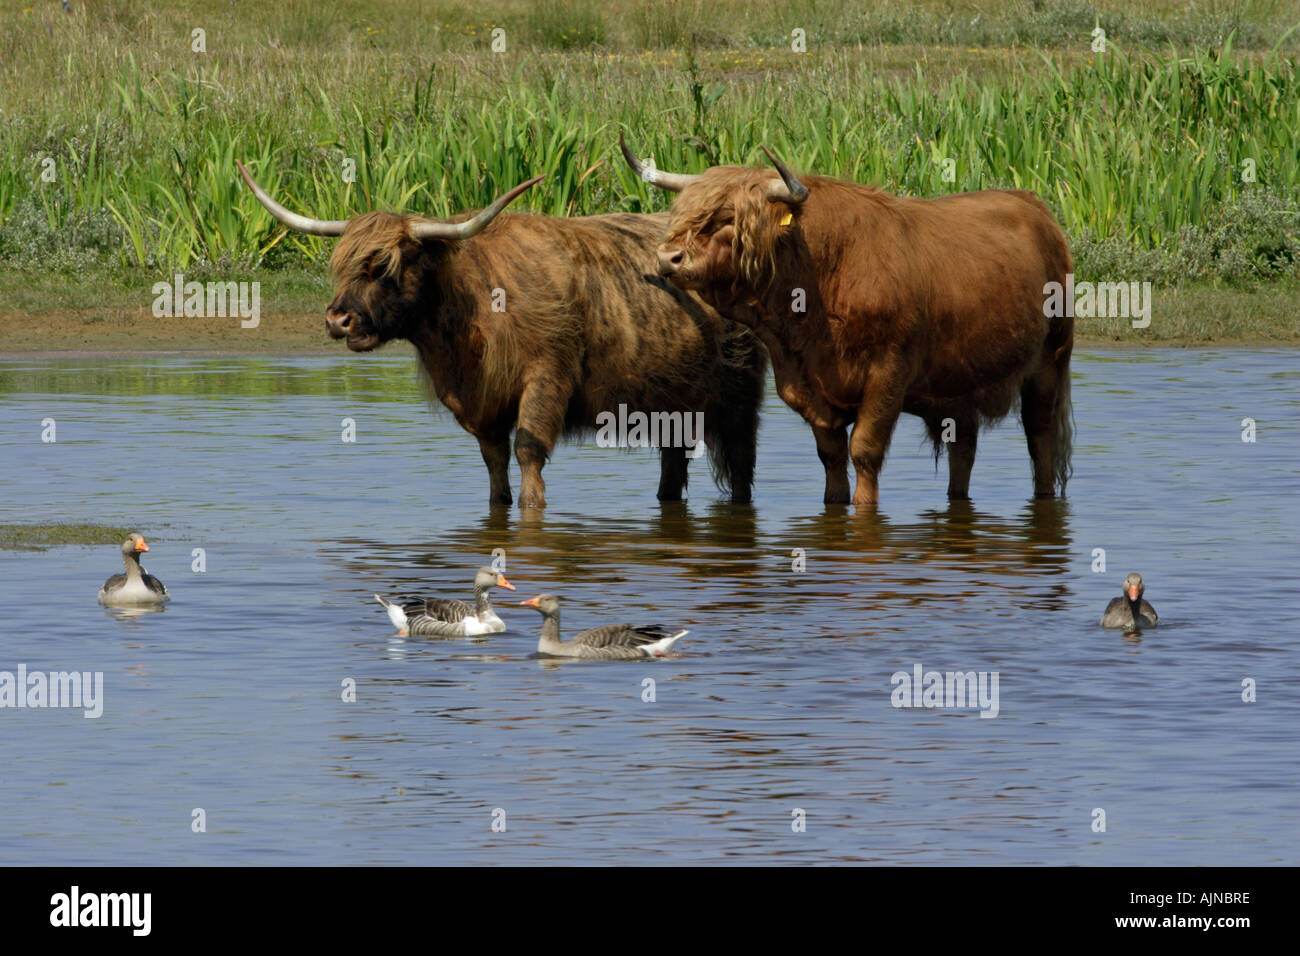 Highland cattle, circuit de refroidissement vers le bas dans le lac avec des oies cendrées, Anser anser, summertime Banque D'Images